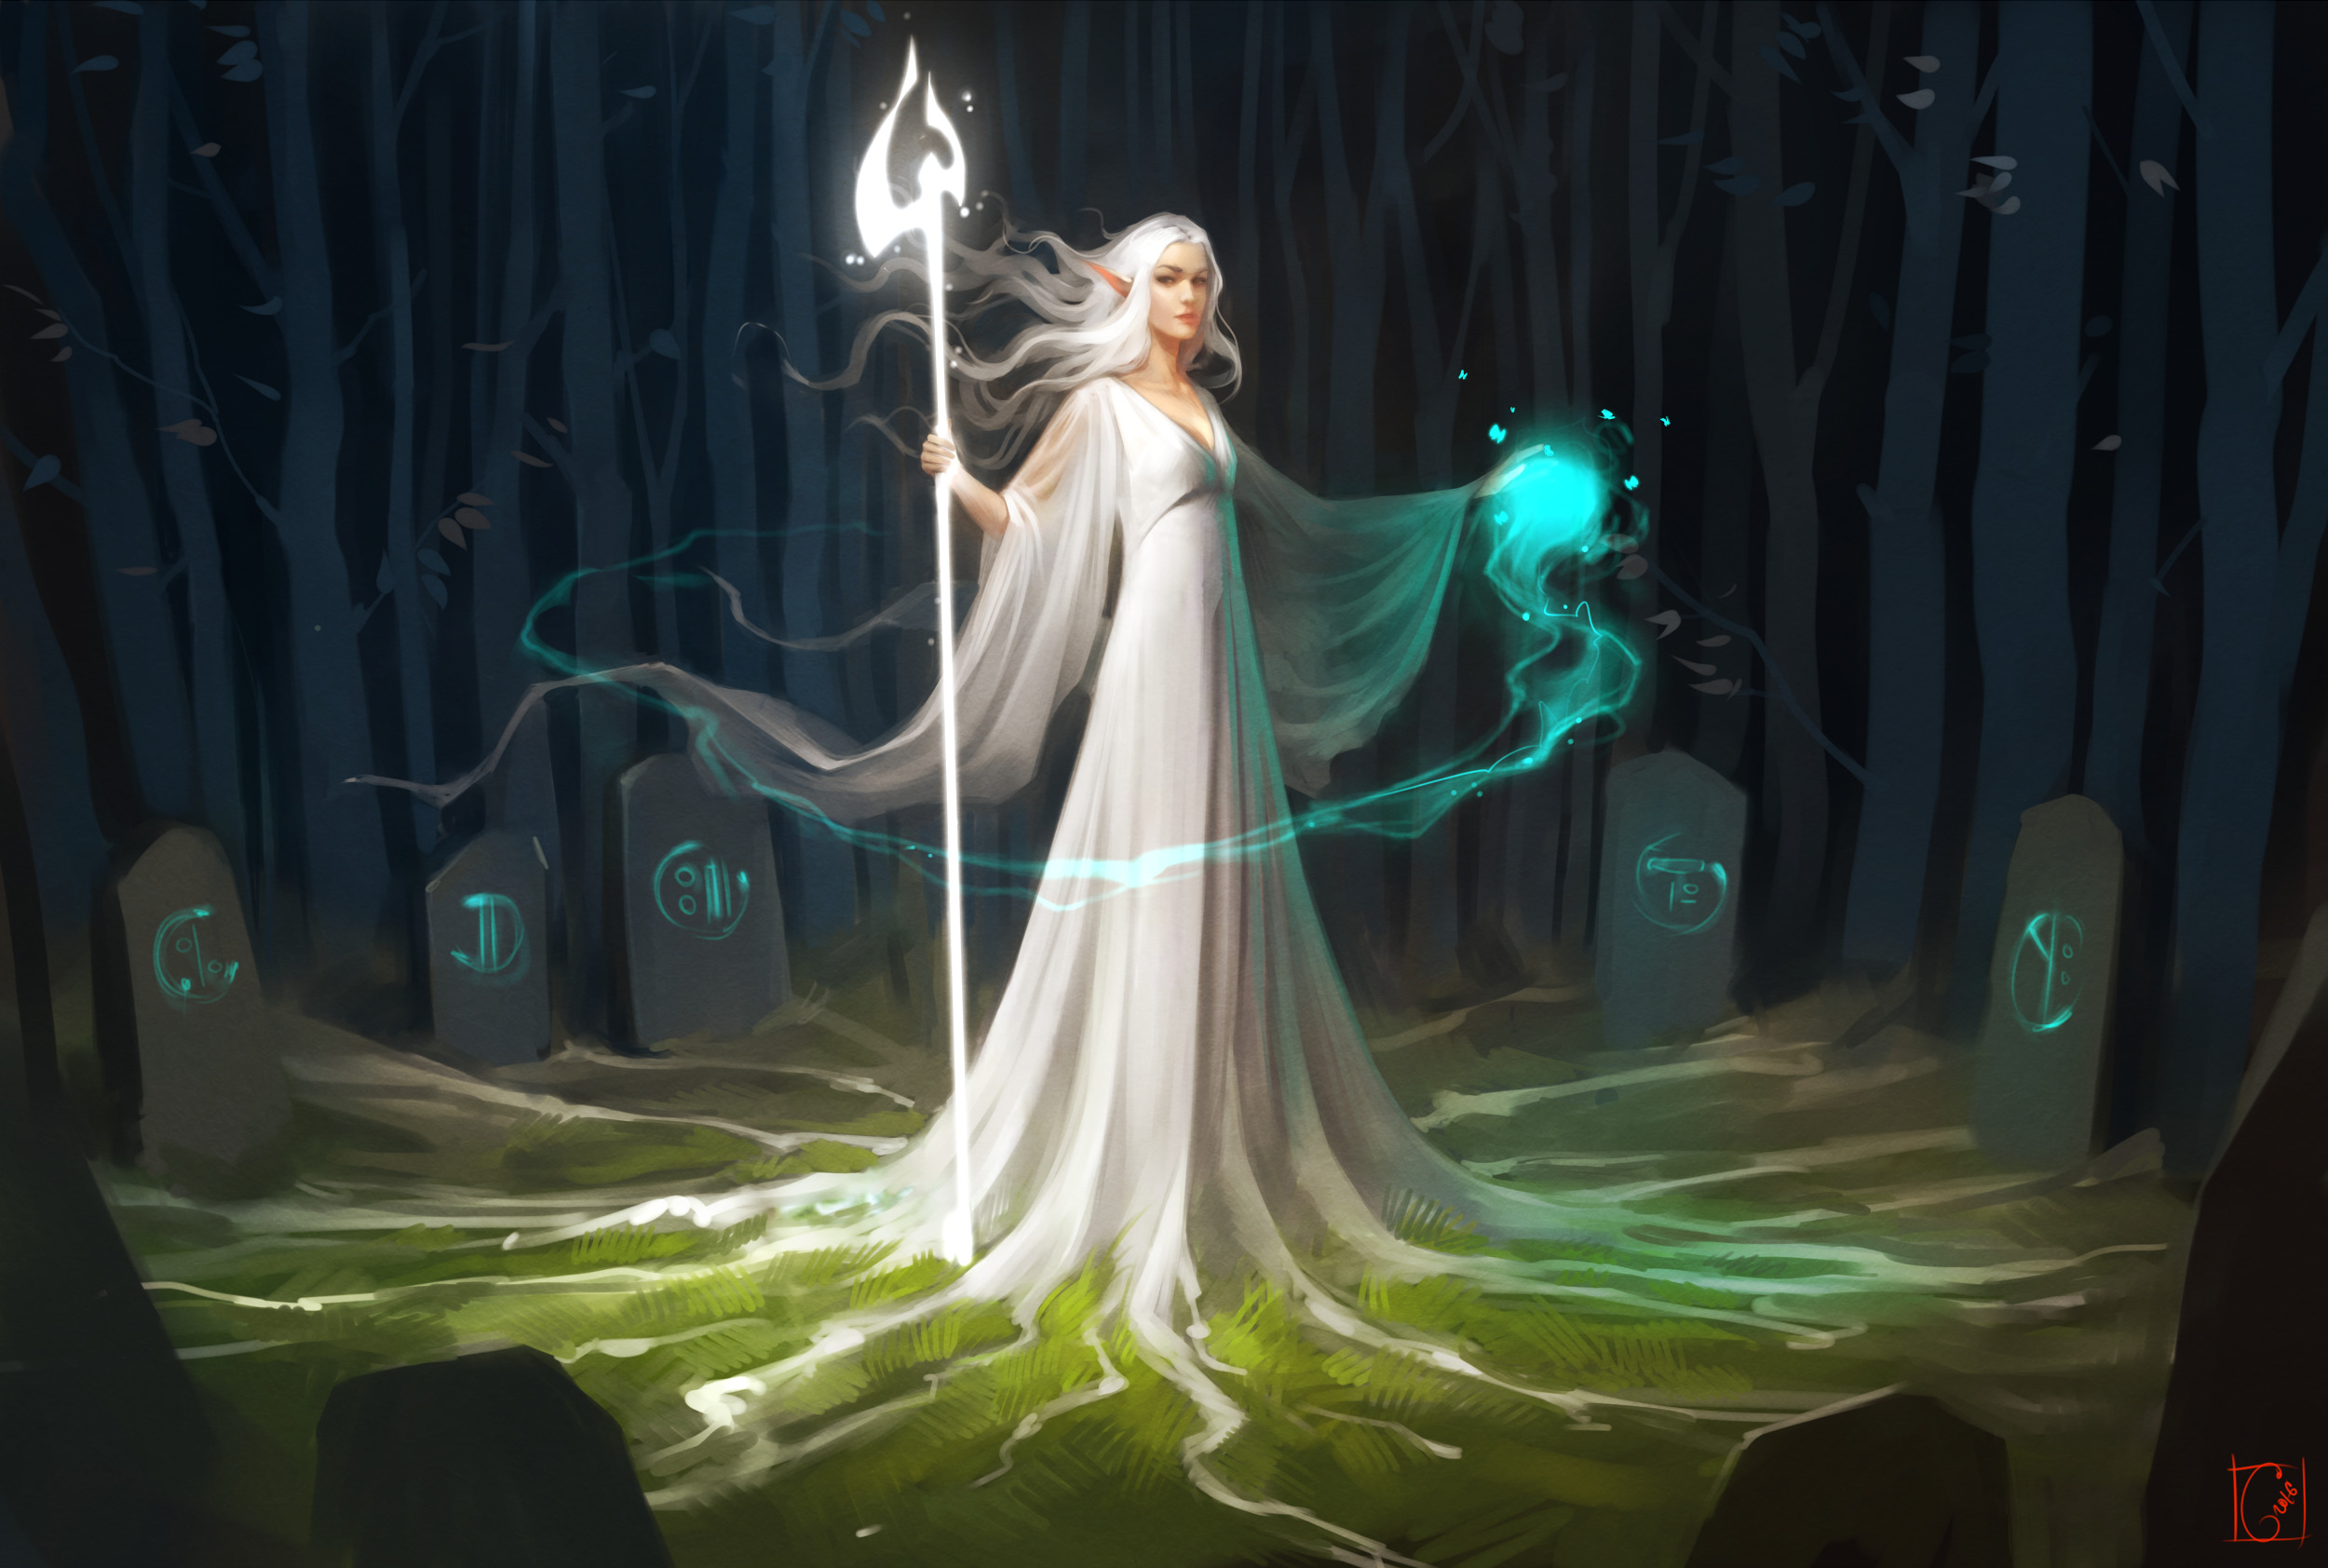 elves, Fantasy art, Magic, White dress, Forest Wallpaper